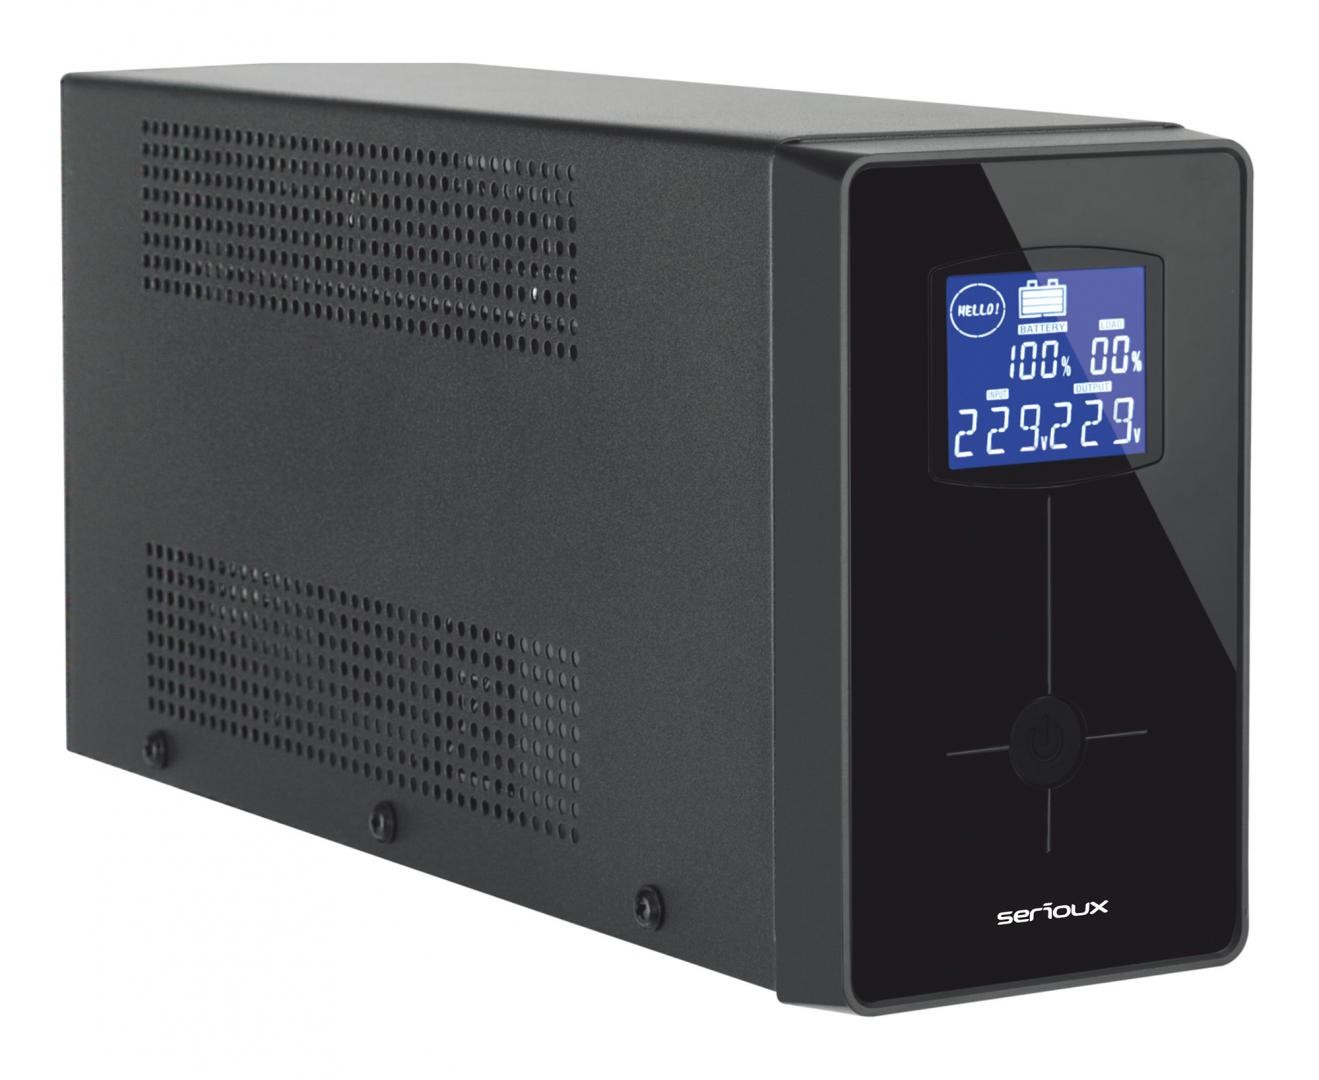 UPS Serioux Line Interactive 800LI, ecran LCD, capacitate 800VA/480W, 2 prize Schuko , baterie 12 V / 8.0 Ah x 1, timp mediu de